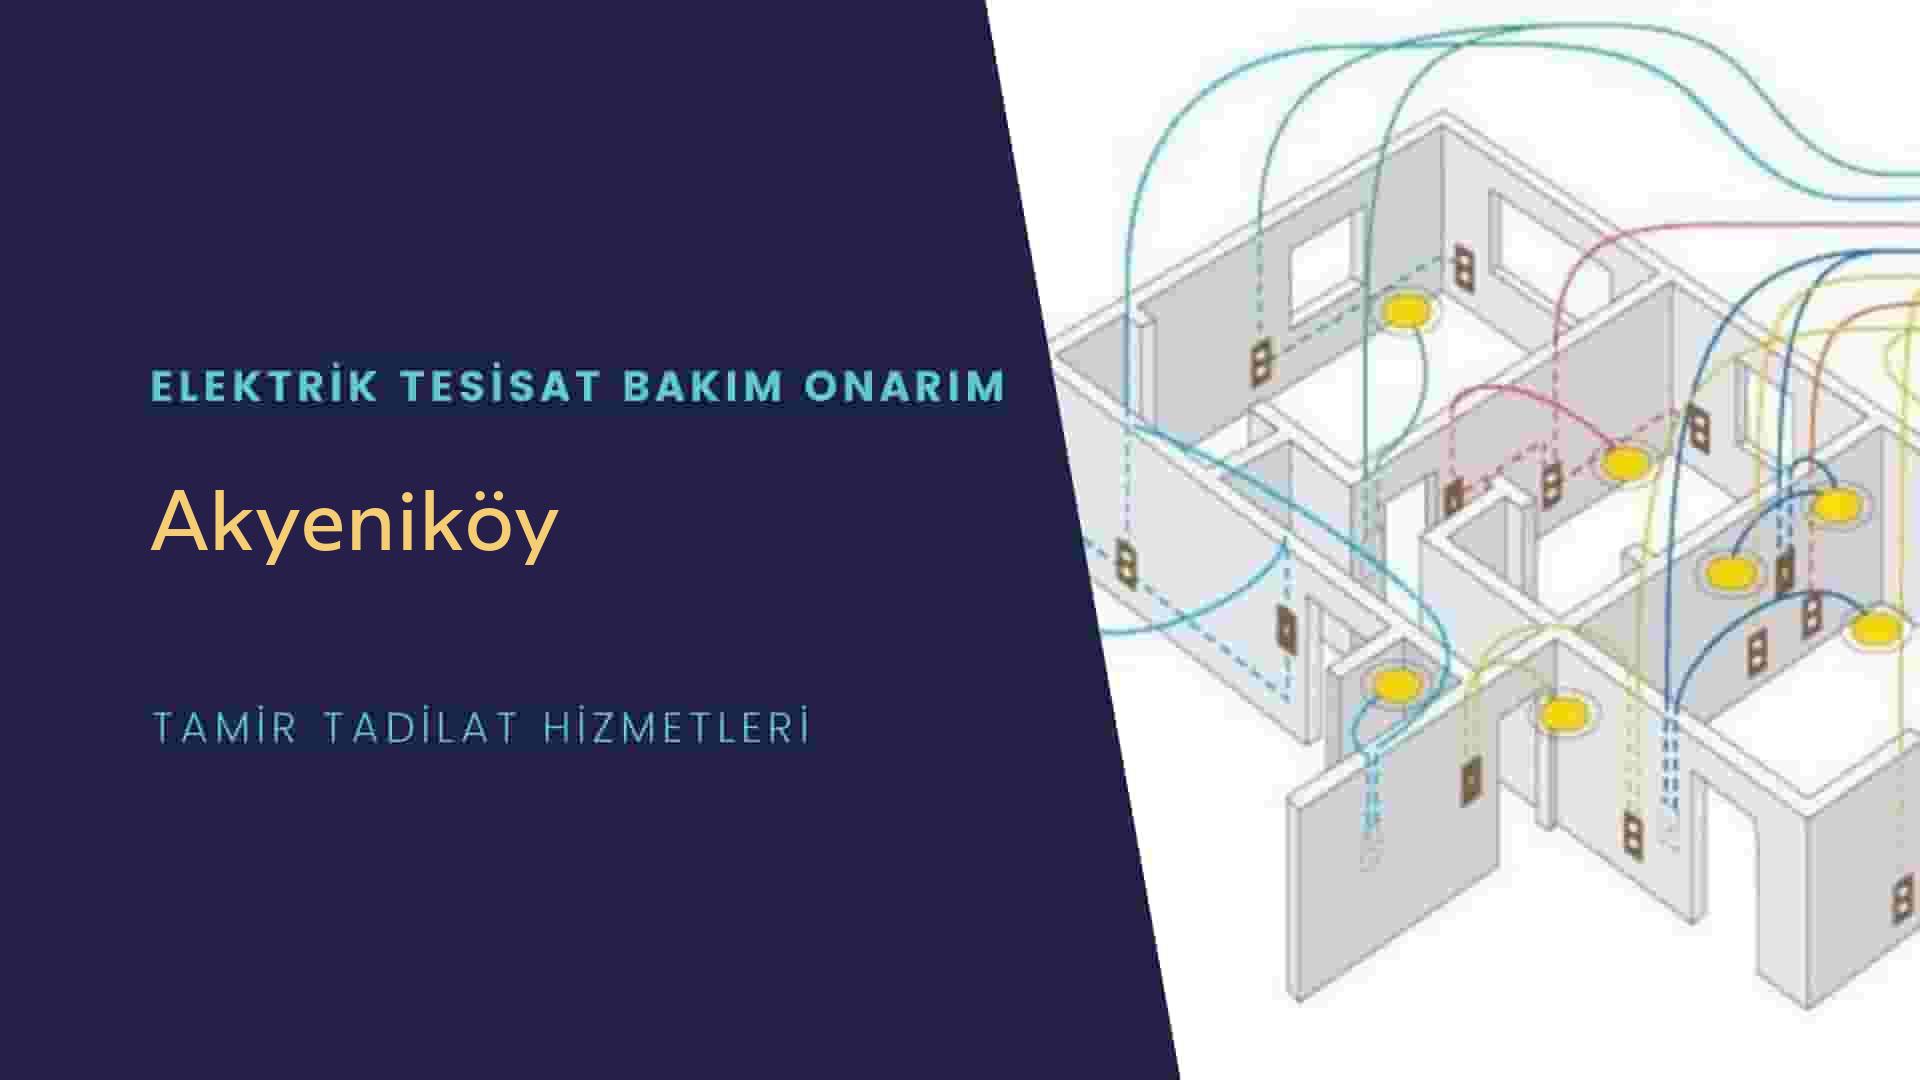 Akyeniköy'de elektrik tesisatı ustalarımı arıyorsunuz doğru adrestenizi Akyeniköy elektrik tesisatı ustalarımız 7/24 sizlere hizmet vermekten mutluluk duyar.